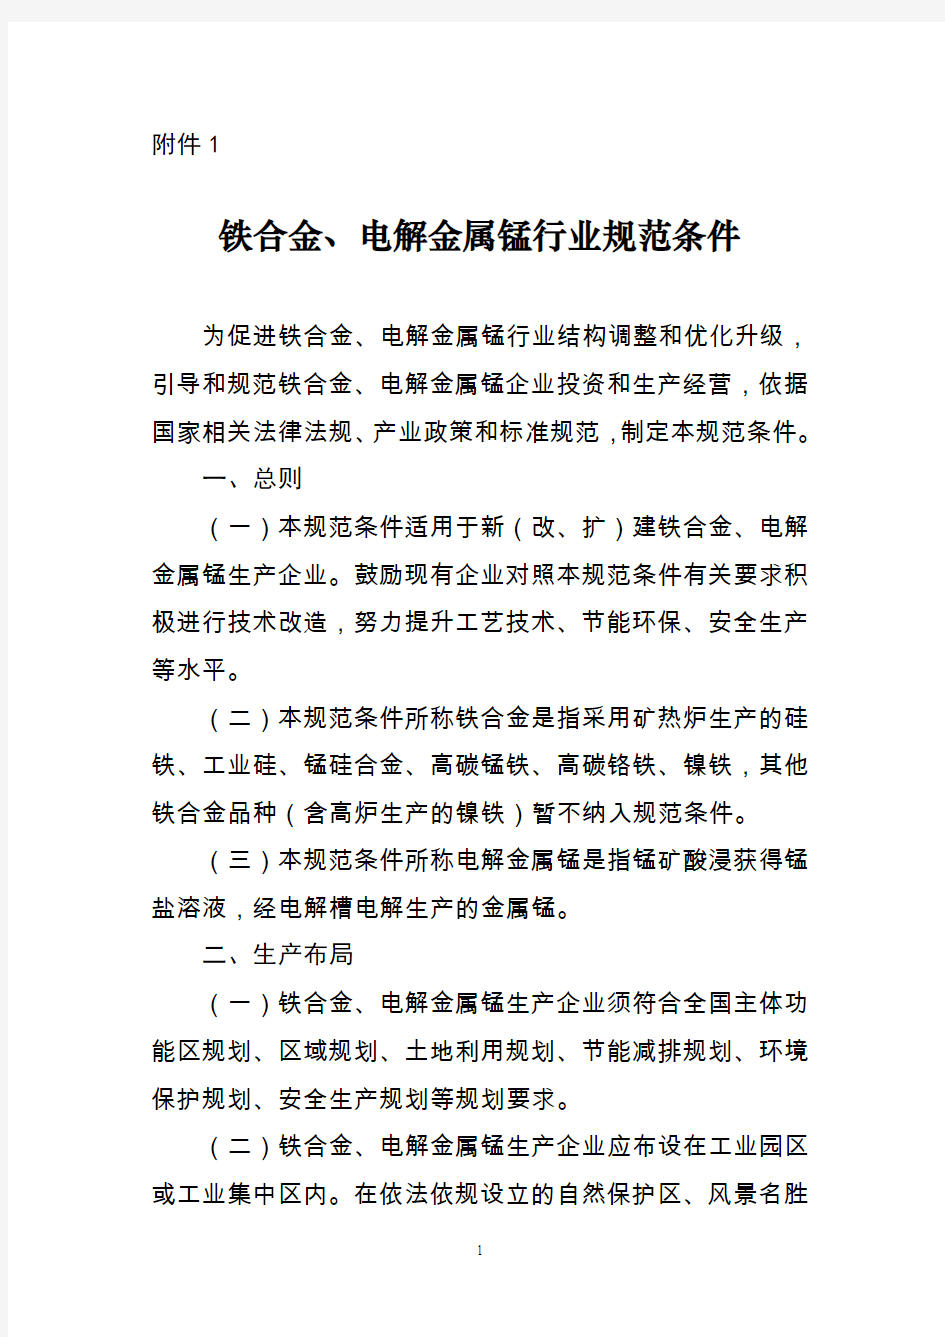 铁合金电解金属锰行业规范条件-中华人民共和国工业和信息化部